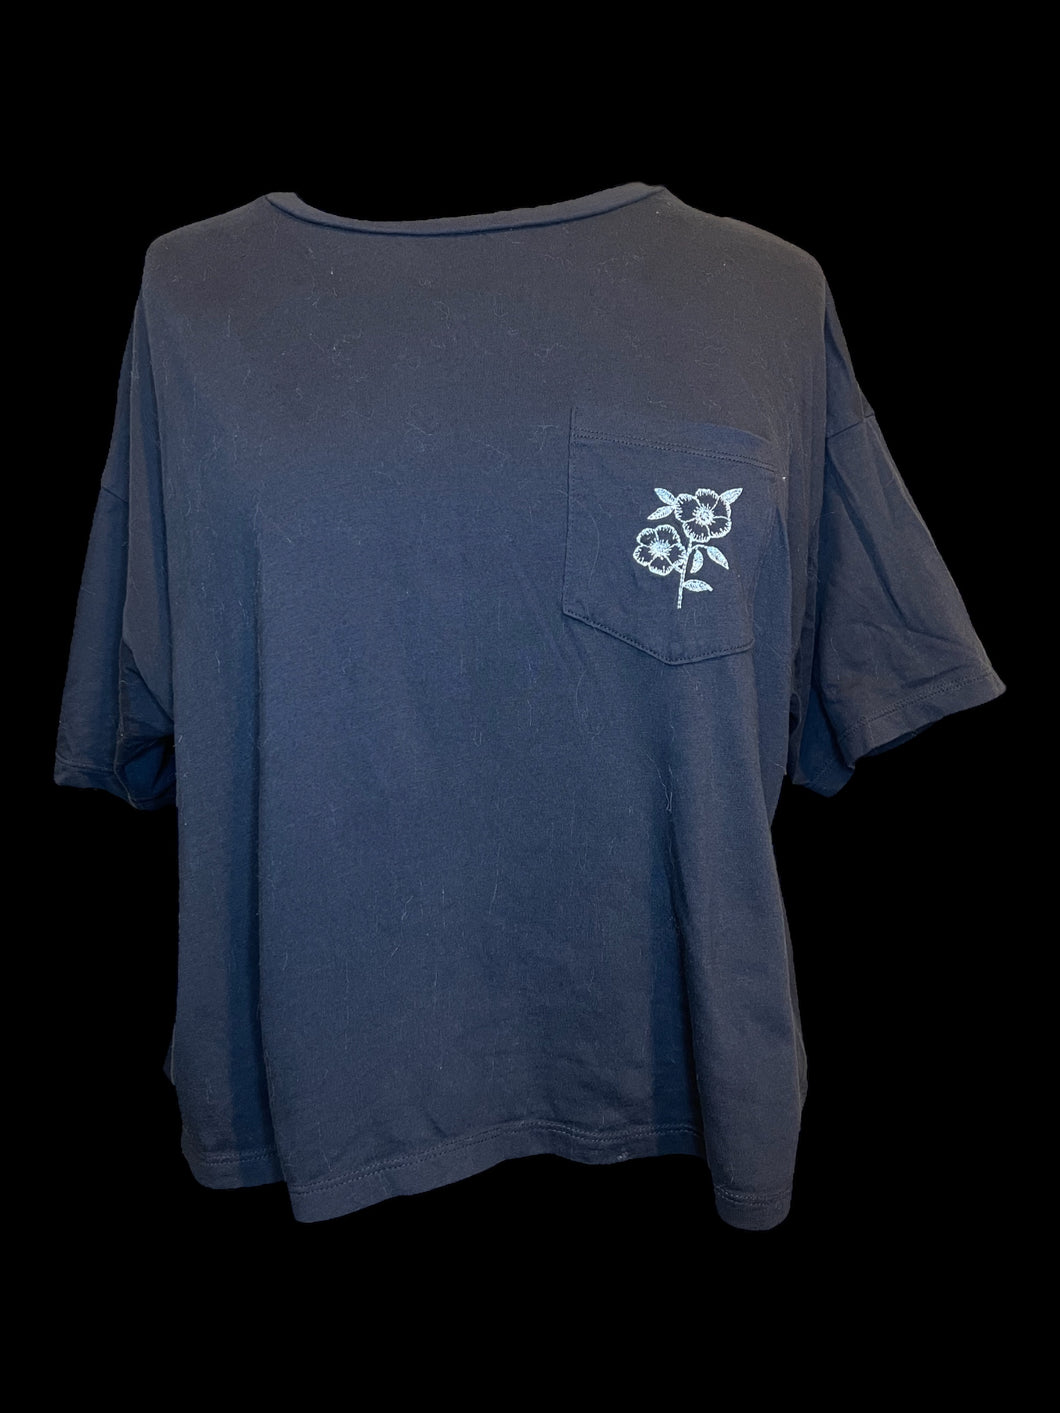 0X Dark grey short sleeve crop top w/ white flower embroidery, & bust pocket